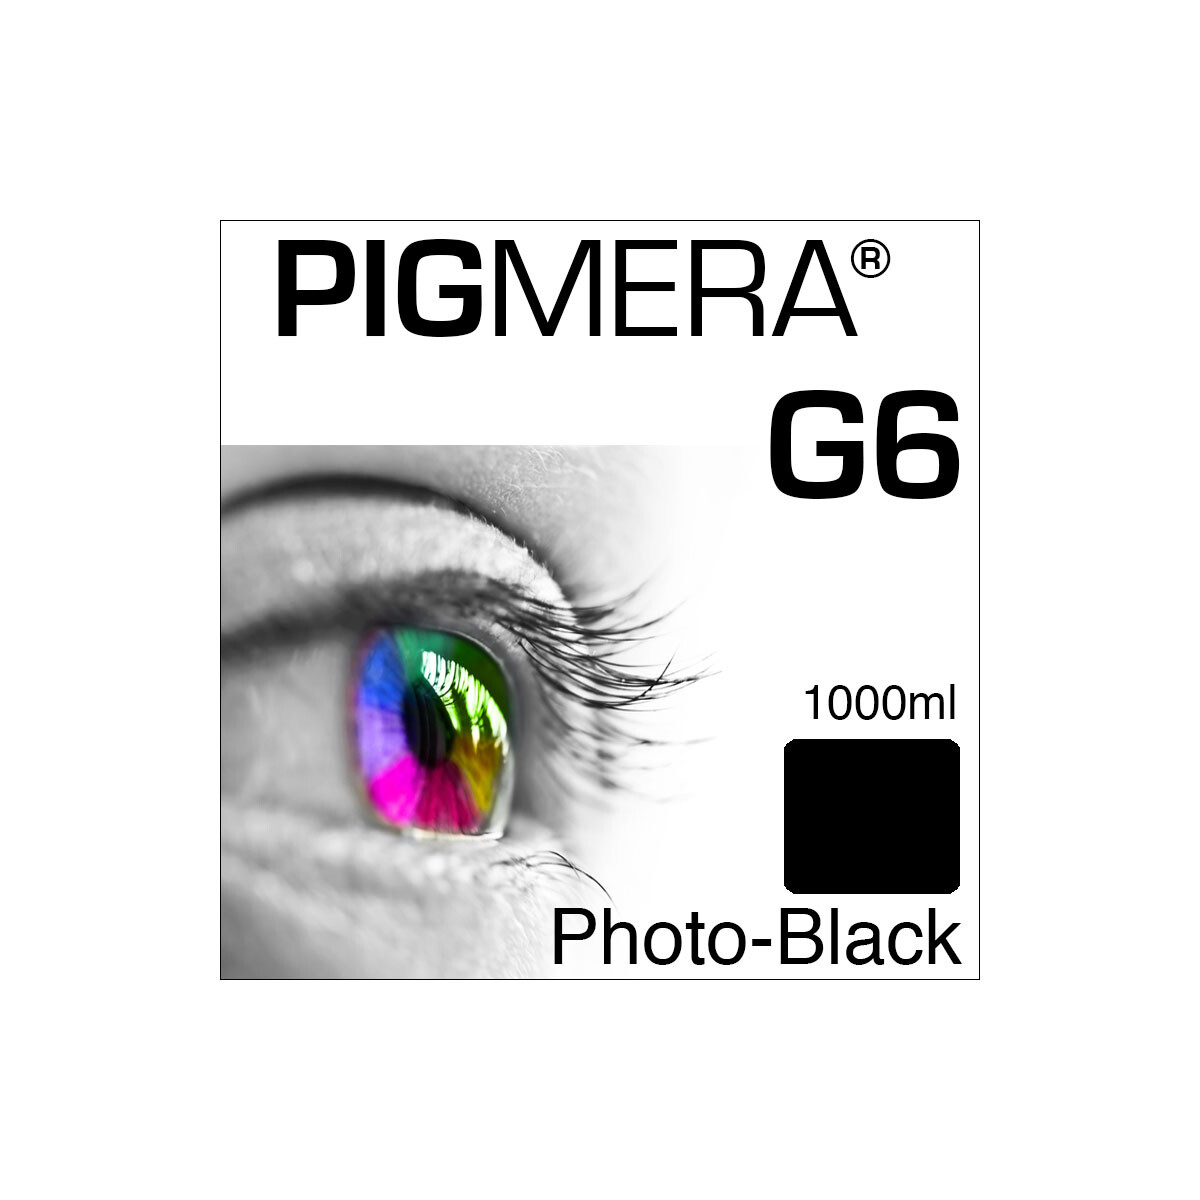 farbenwerk Pigmera G6 Bottle Photo-Black 1000ml